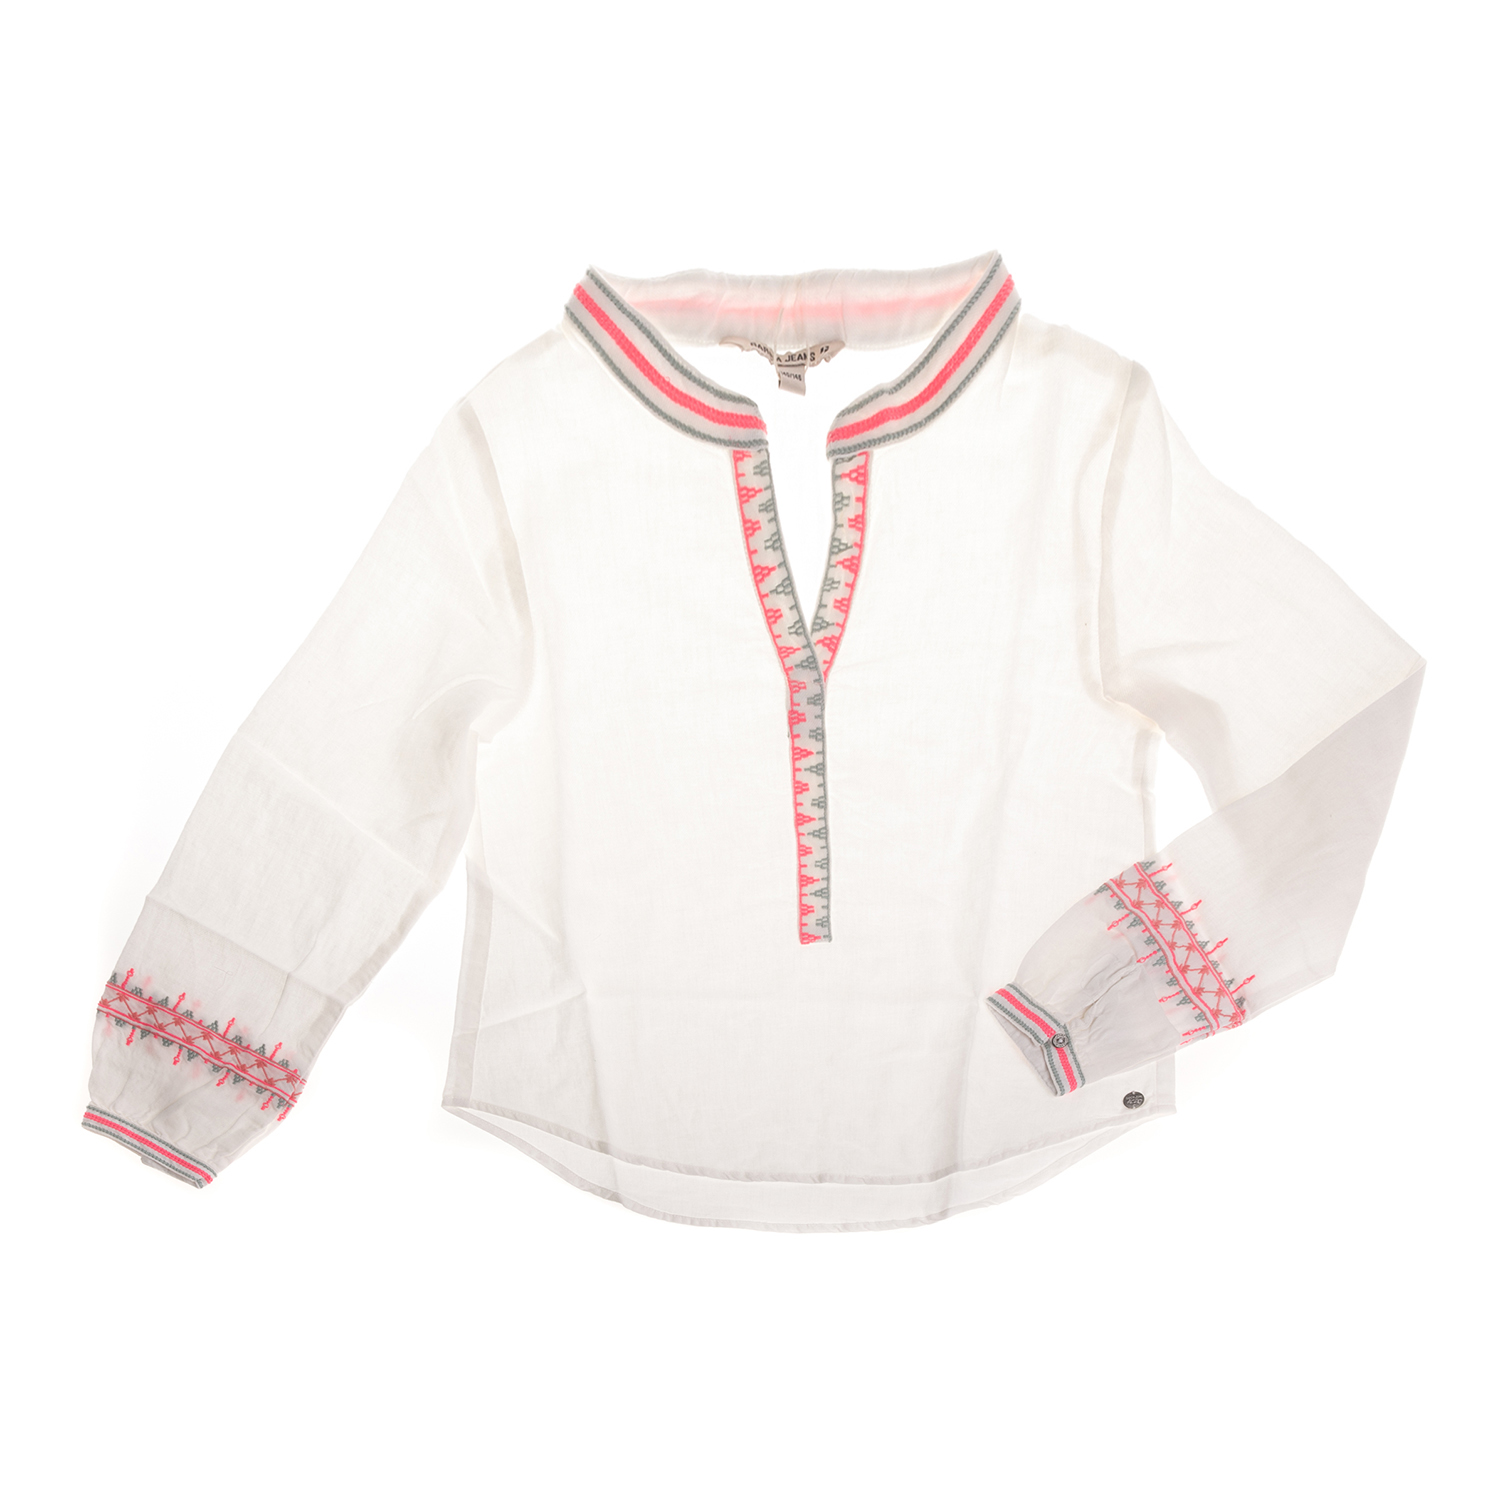 GARCIA JEANS - Παιδική μακρυμάνικη μπλούζα GARCIA JEANS λευκή Παιδικά/Girls/Ρούχα/Μπλούζες Μακρυμάνικες